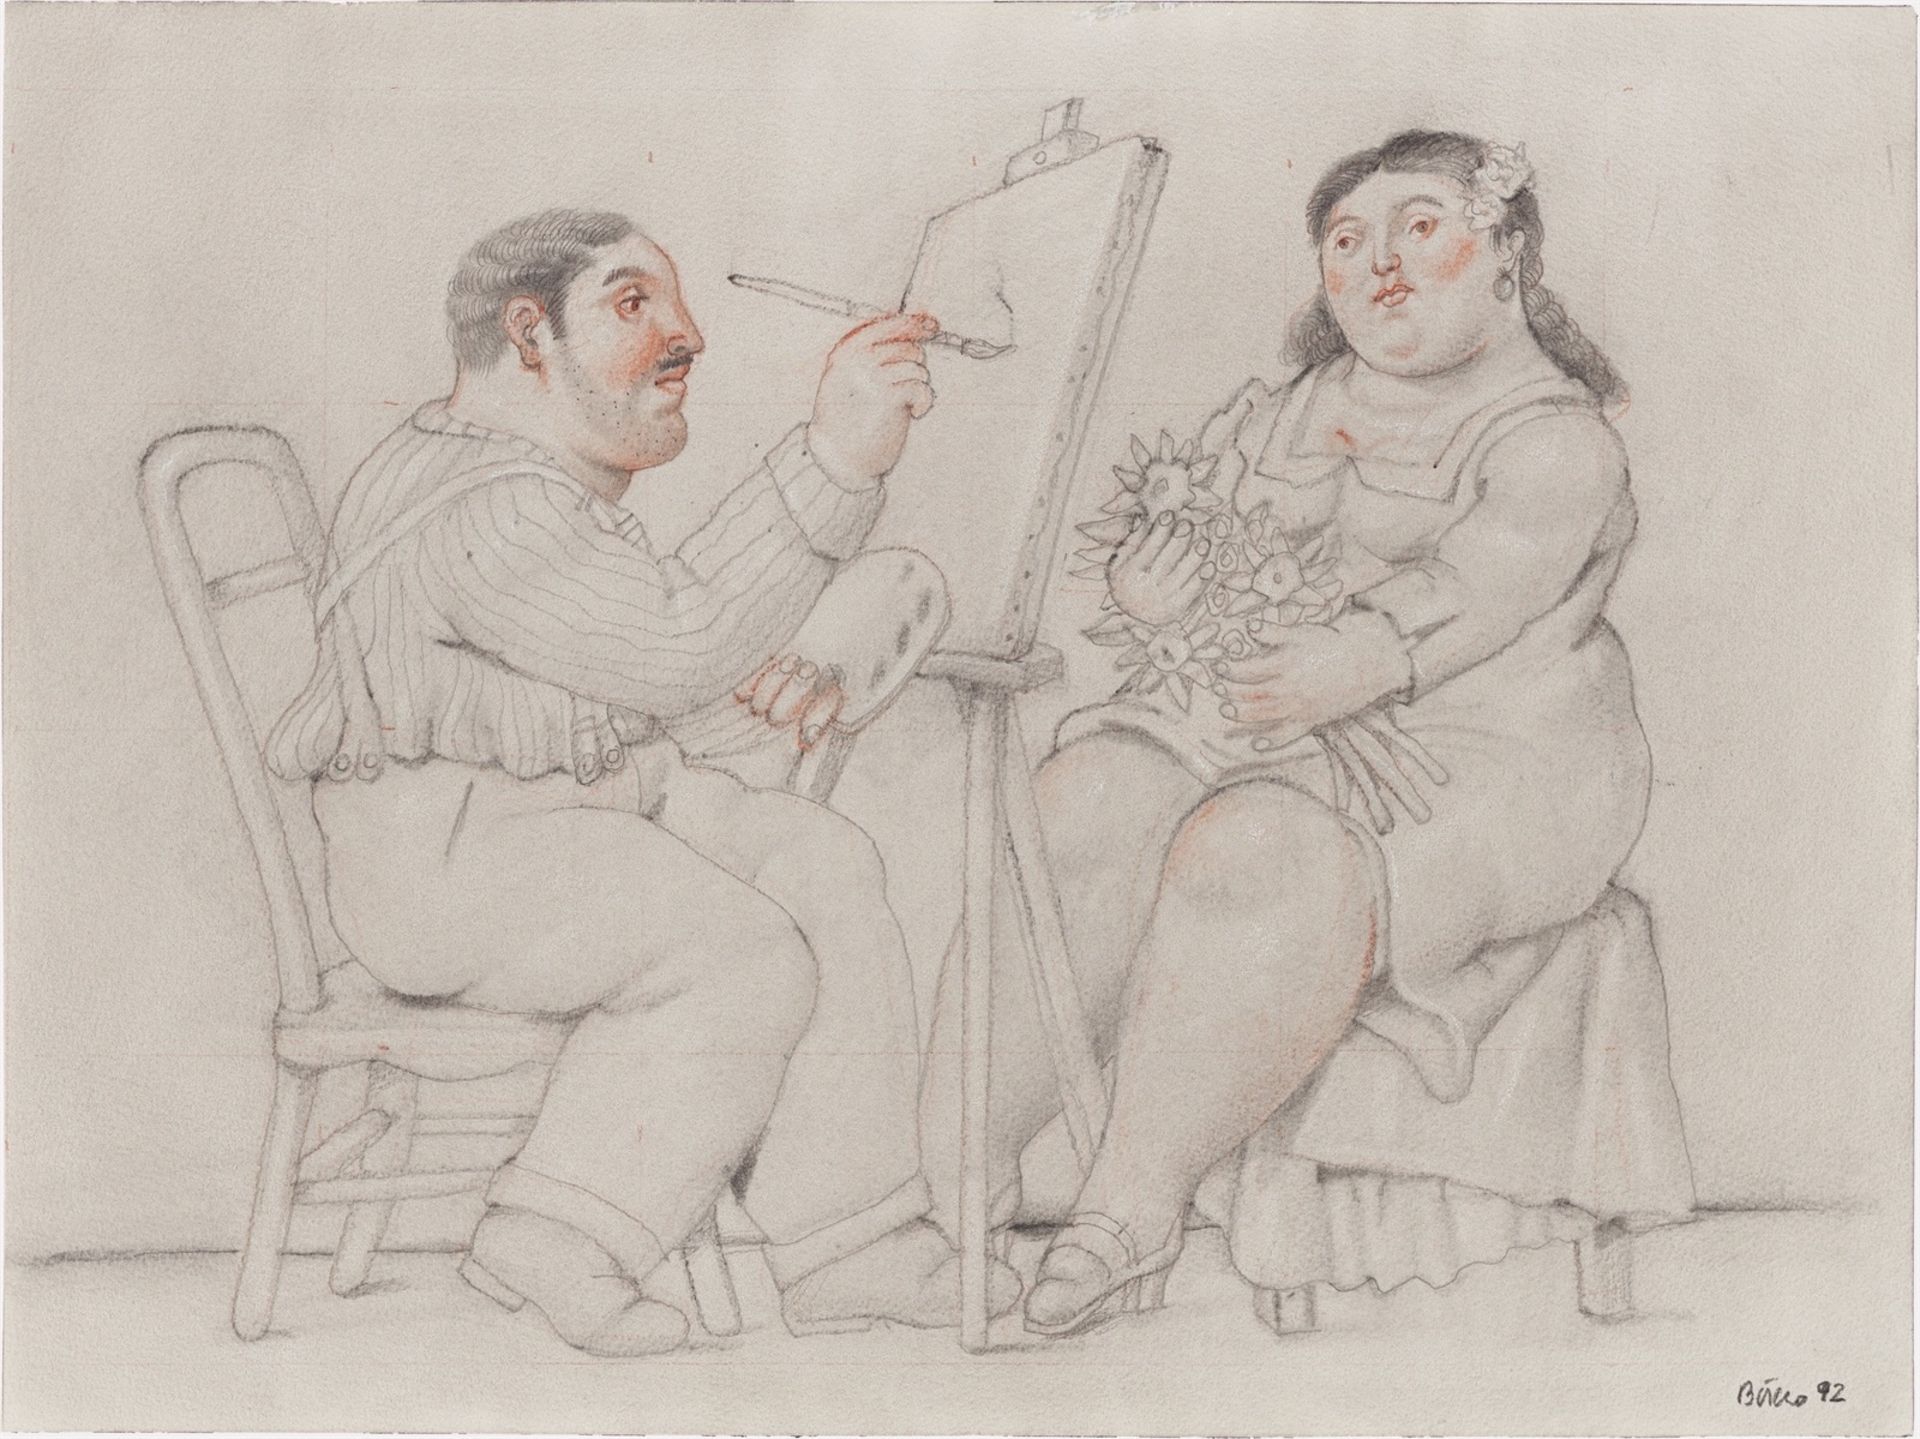 Fernando Botero. ”Pintor y la Modelo”. 1992